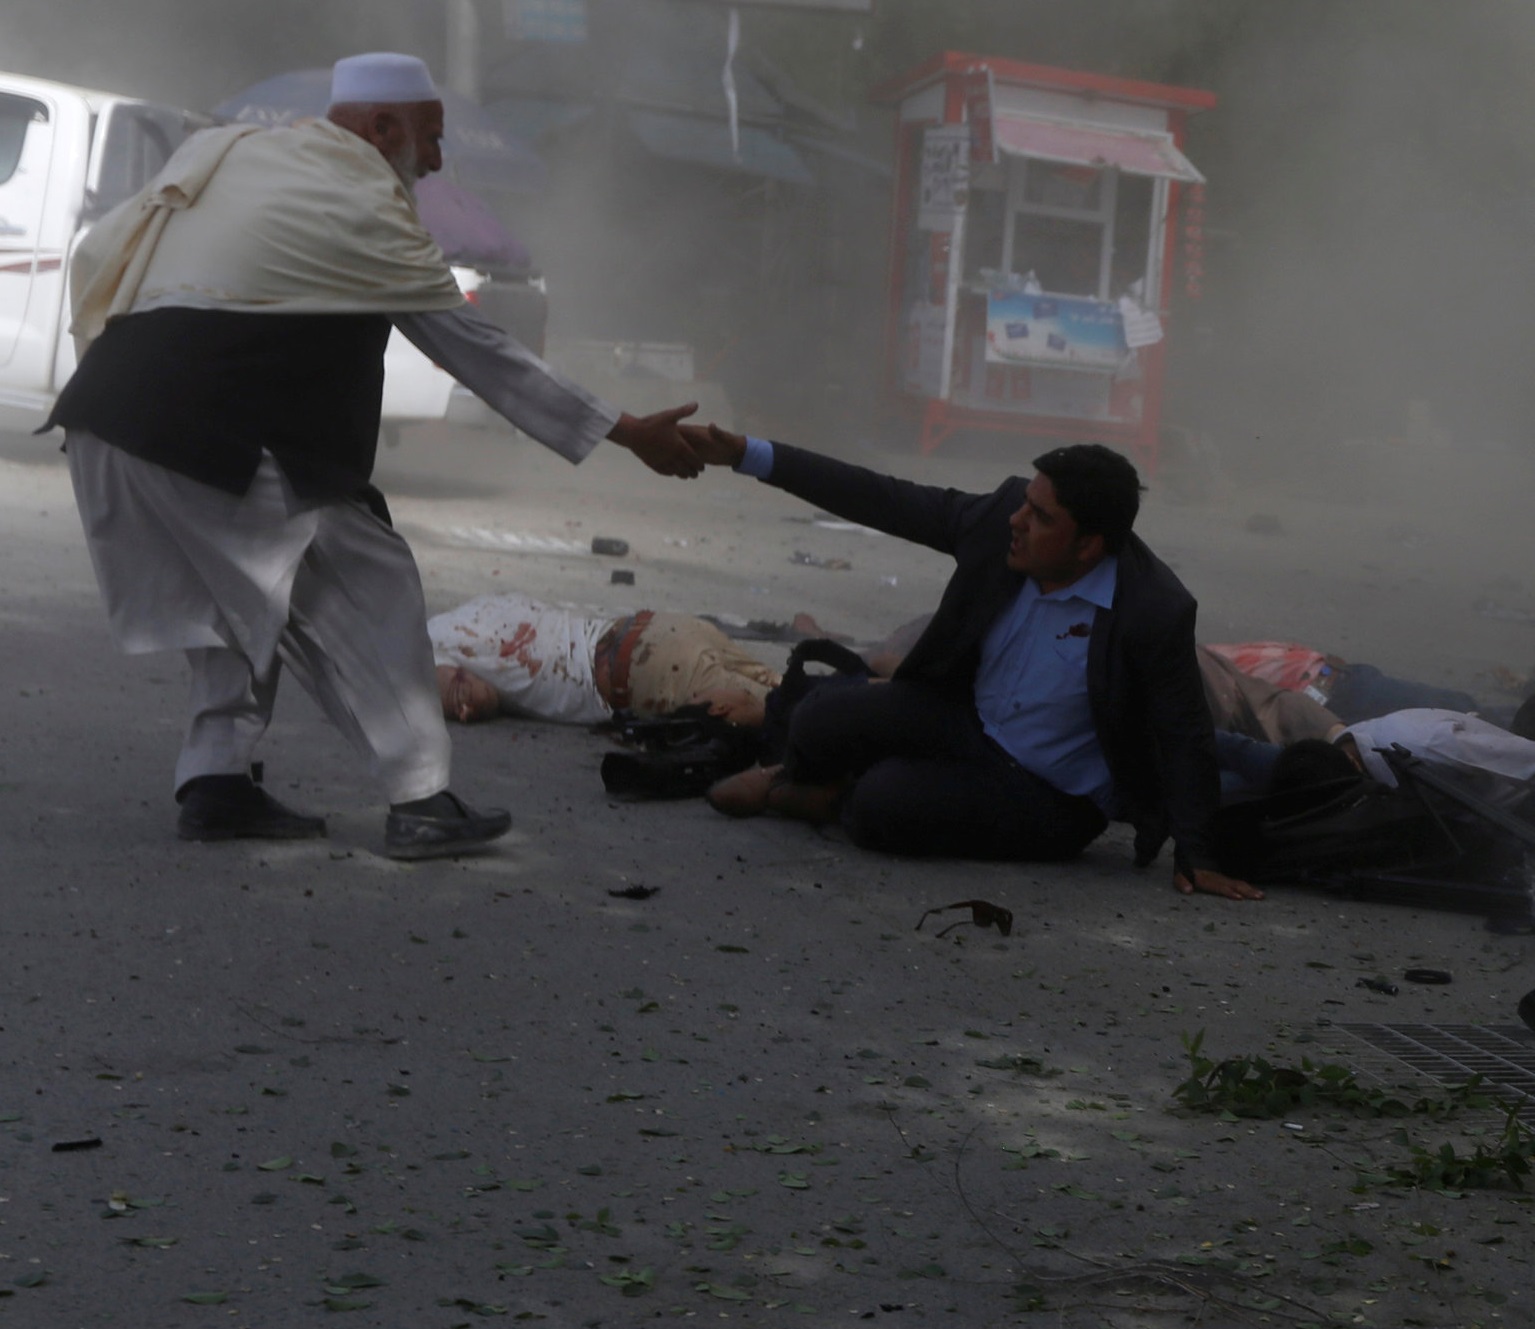 Suman nueve periodistas muertos tras atentado doble en Afganistán